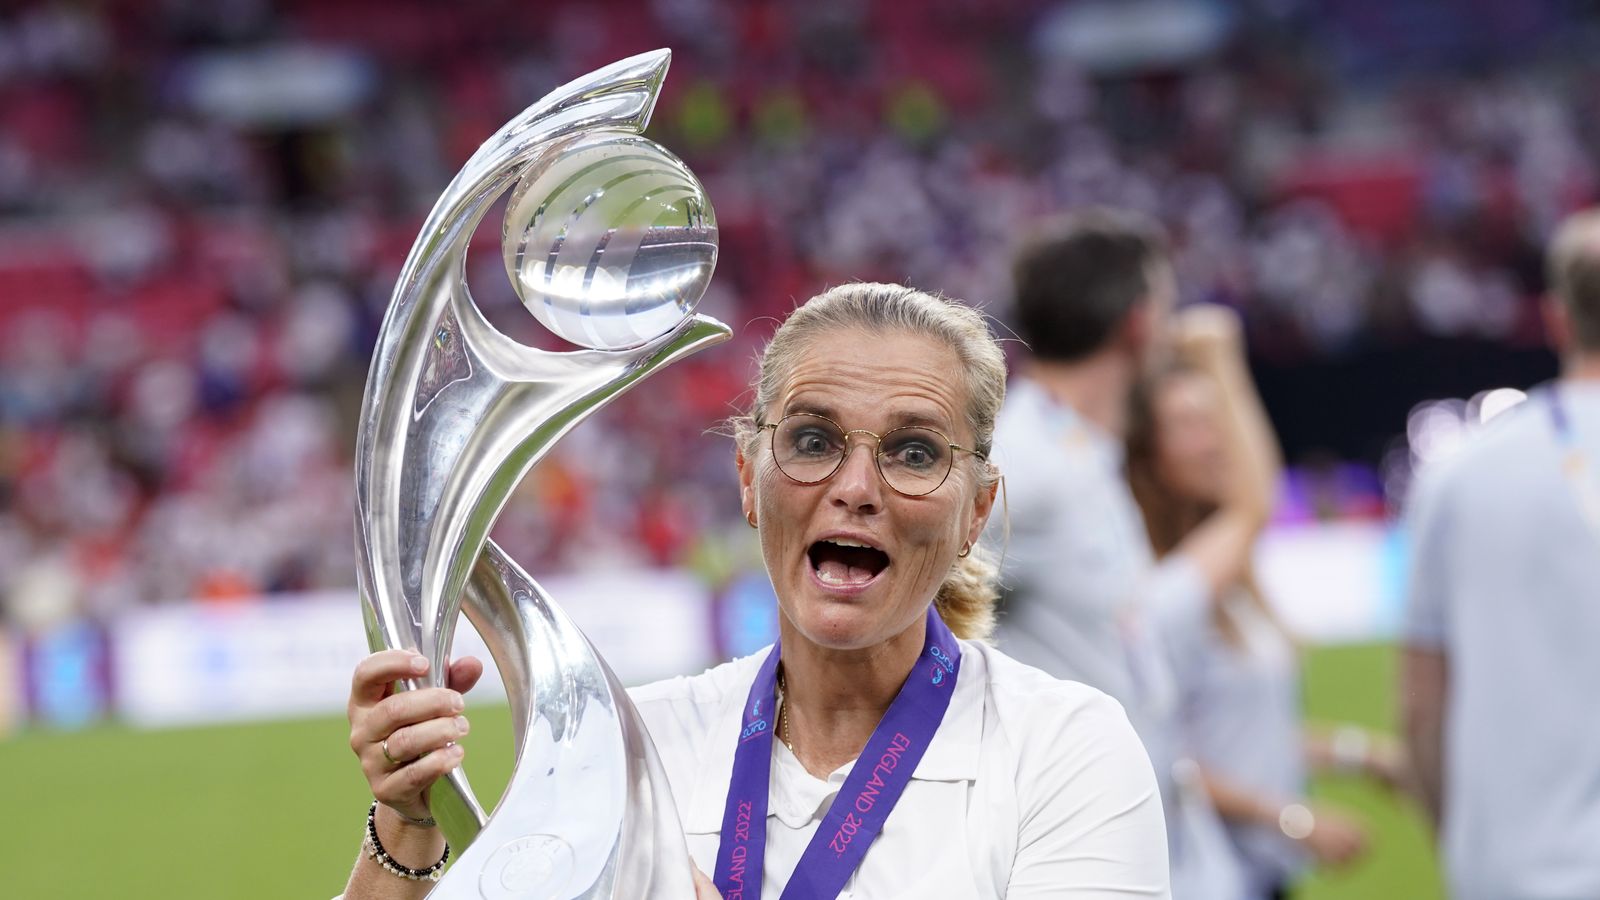 Sarina Wiegman kåret til årets kvinnetrener i UEFA etter EM 2022-triumf |  Fotballnyheter